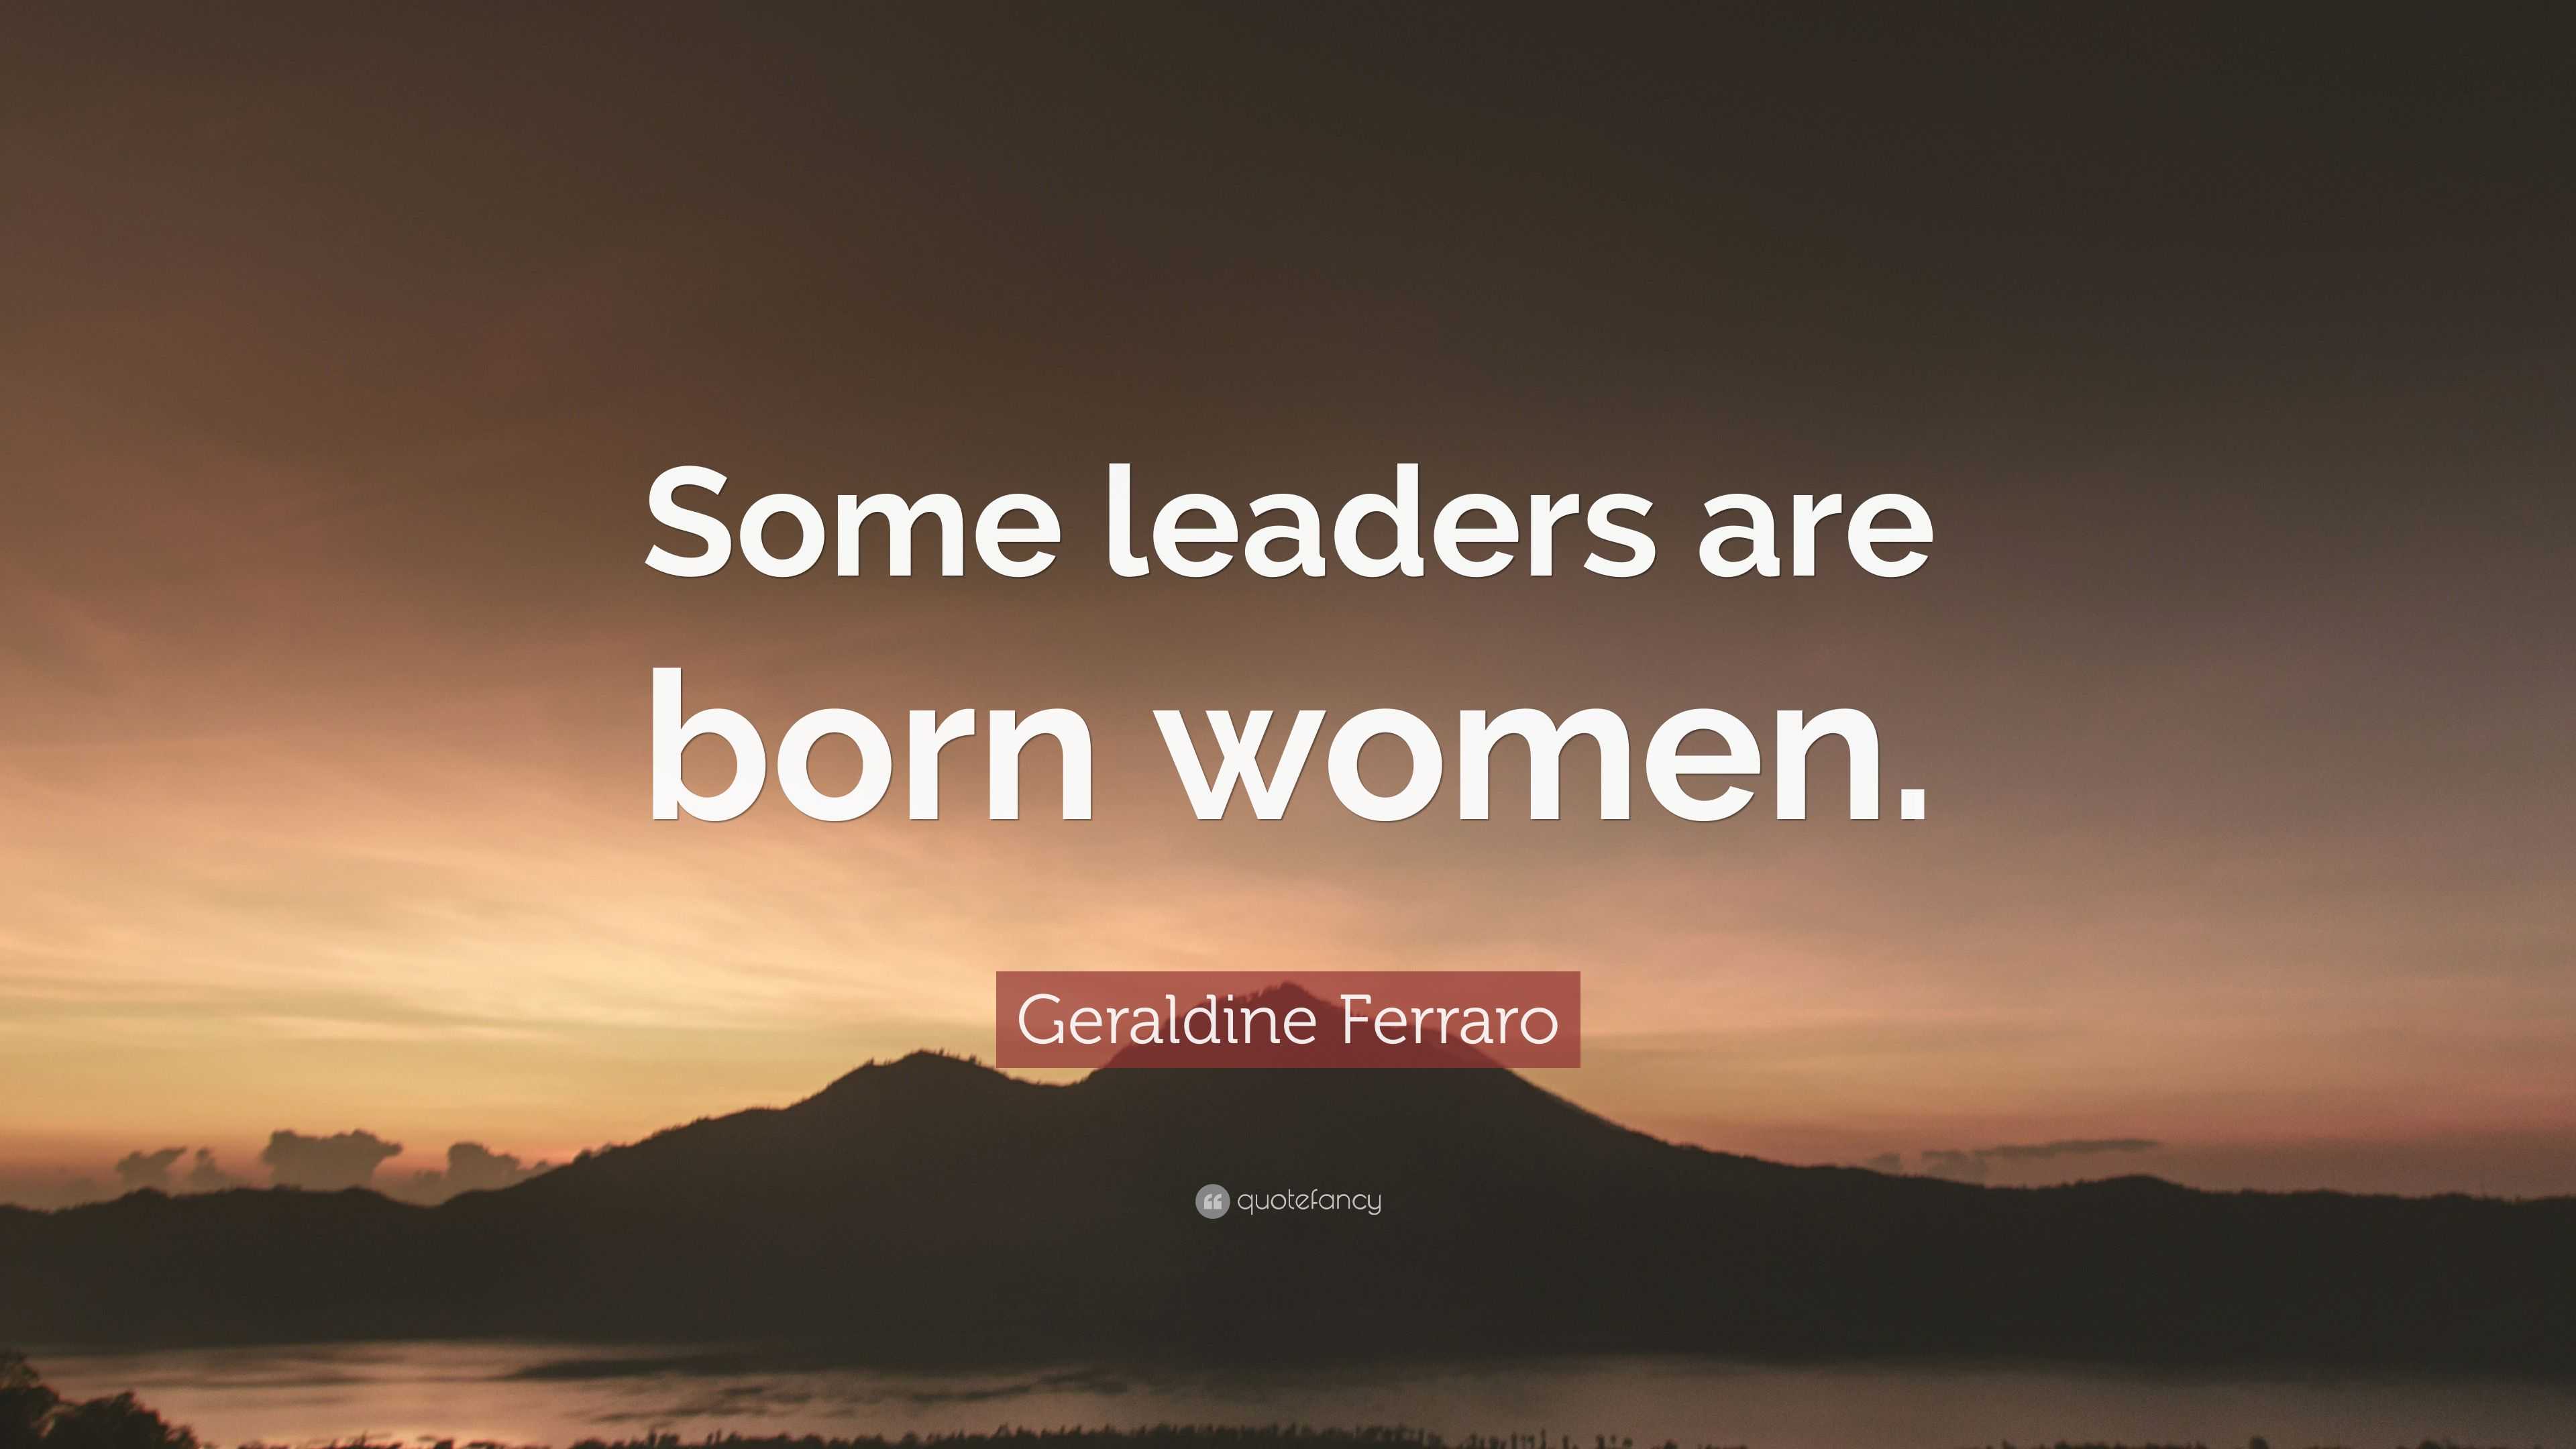 Geraldine Ferraro Quote: “Some leaders are born women.” (12 wallpapers